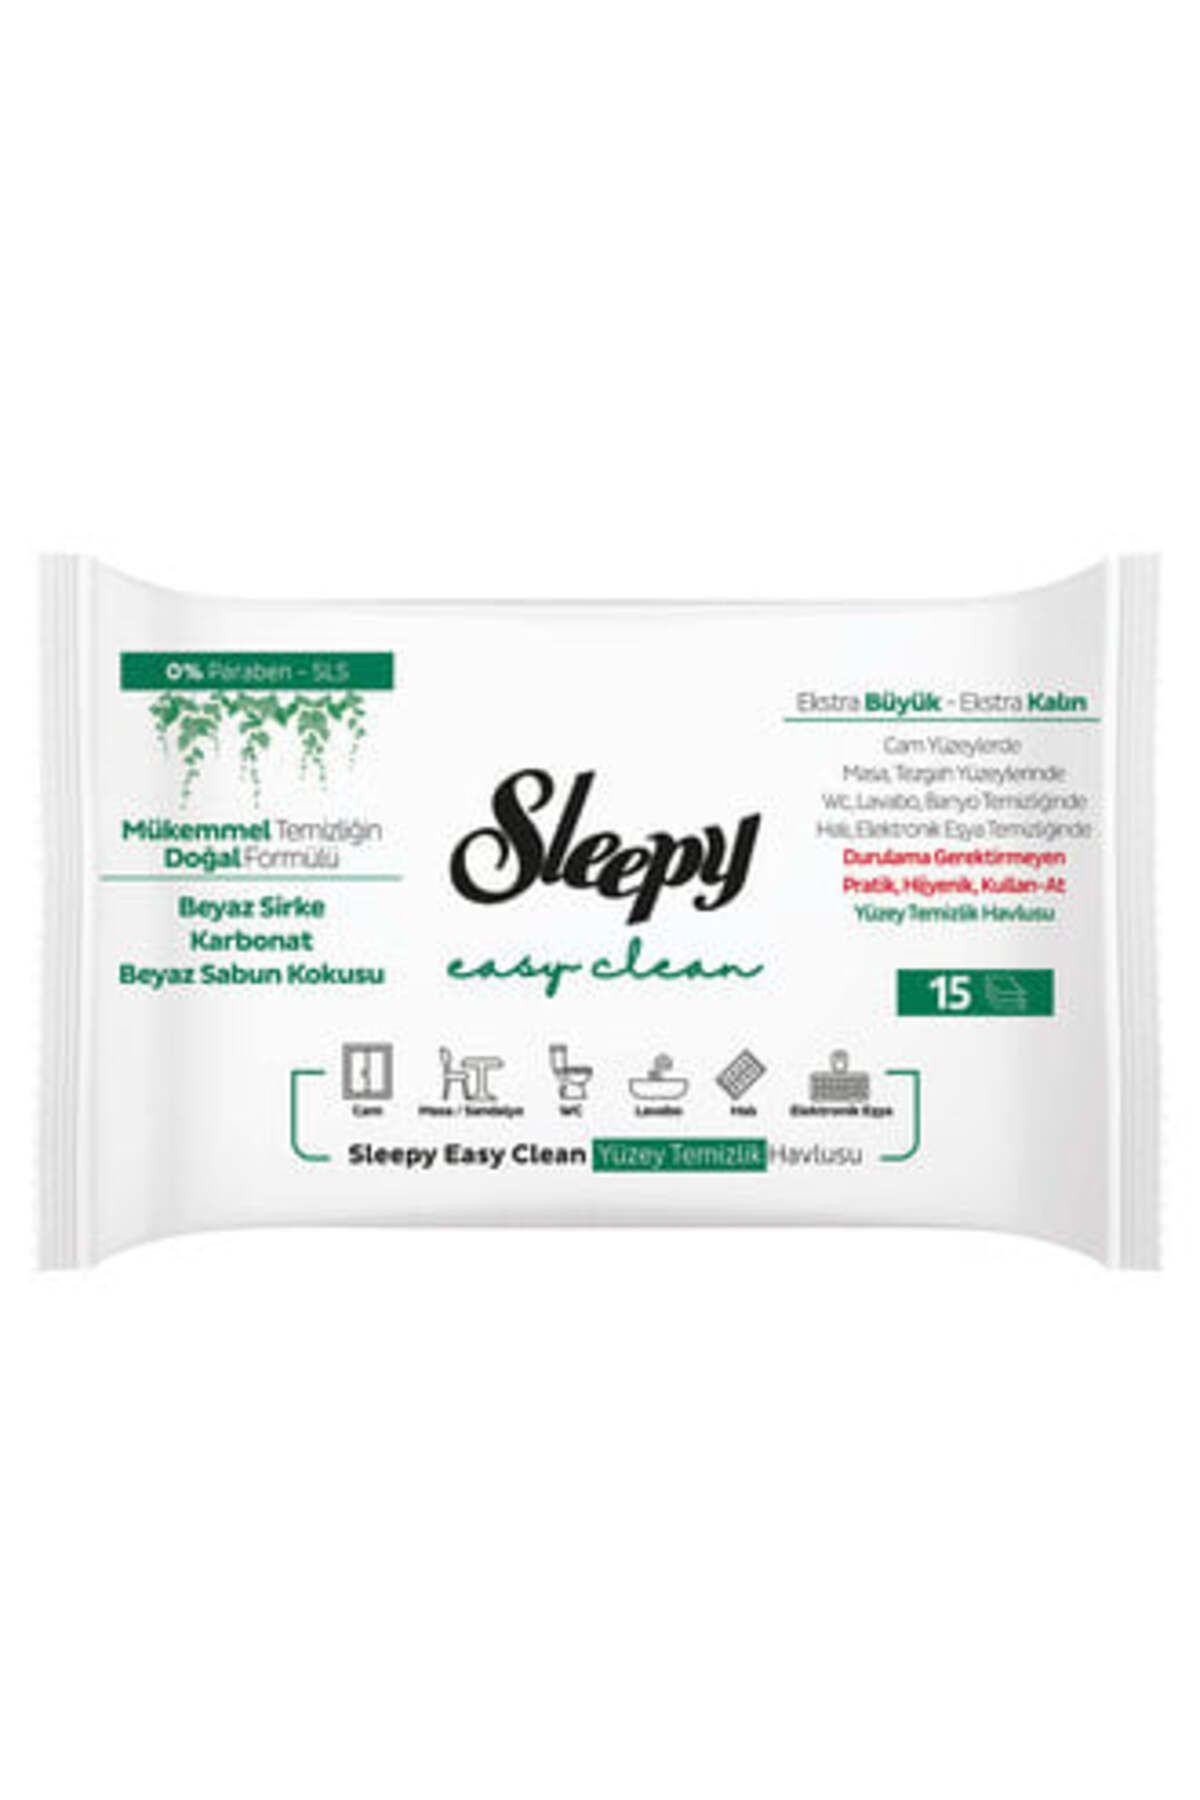 Sleepy Easy Clean Yüzey Temizlik Havlusu 2x15'li ( 1 ADET )